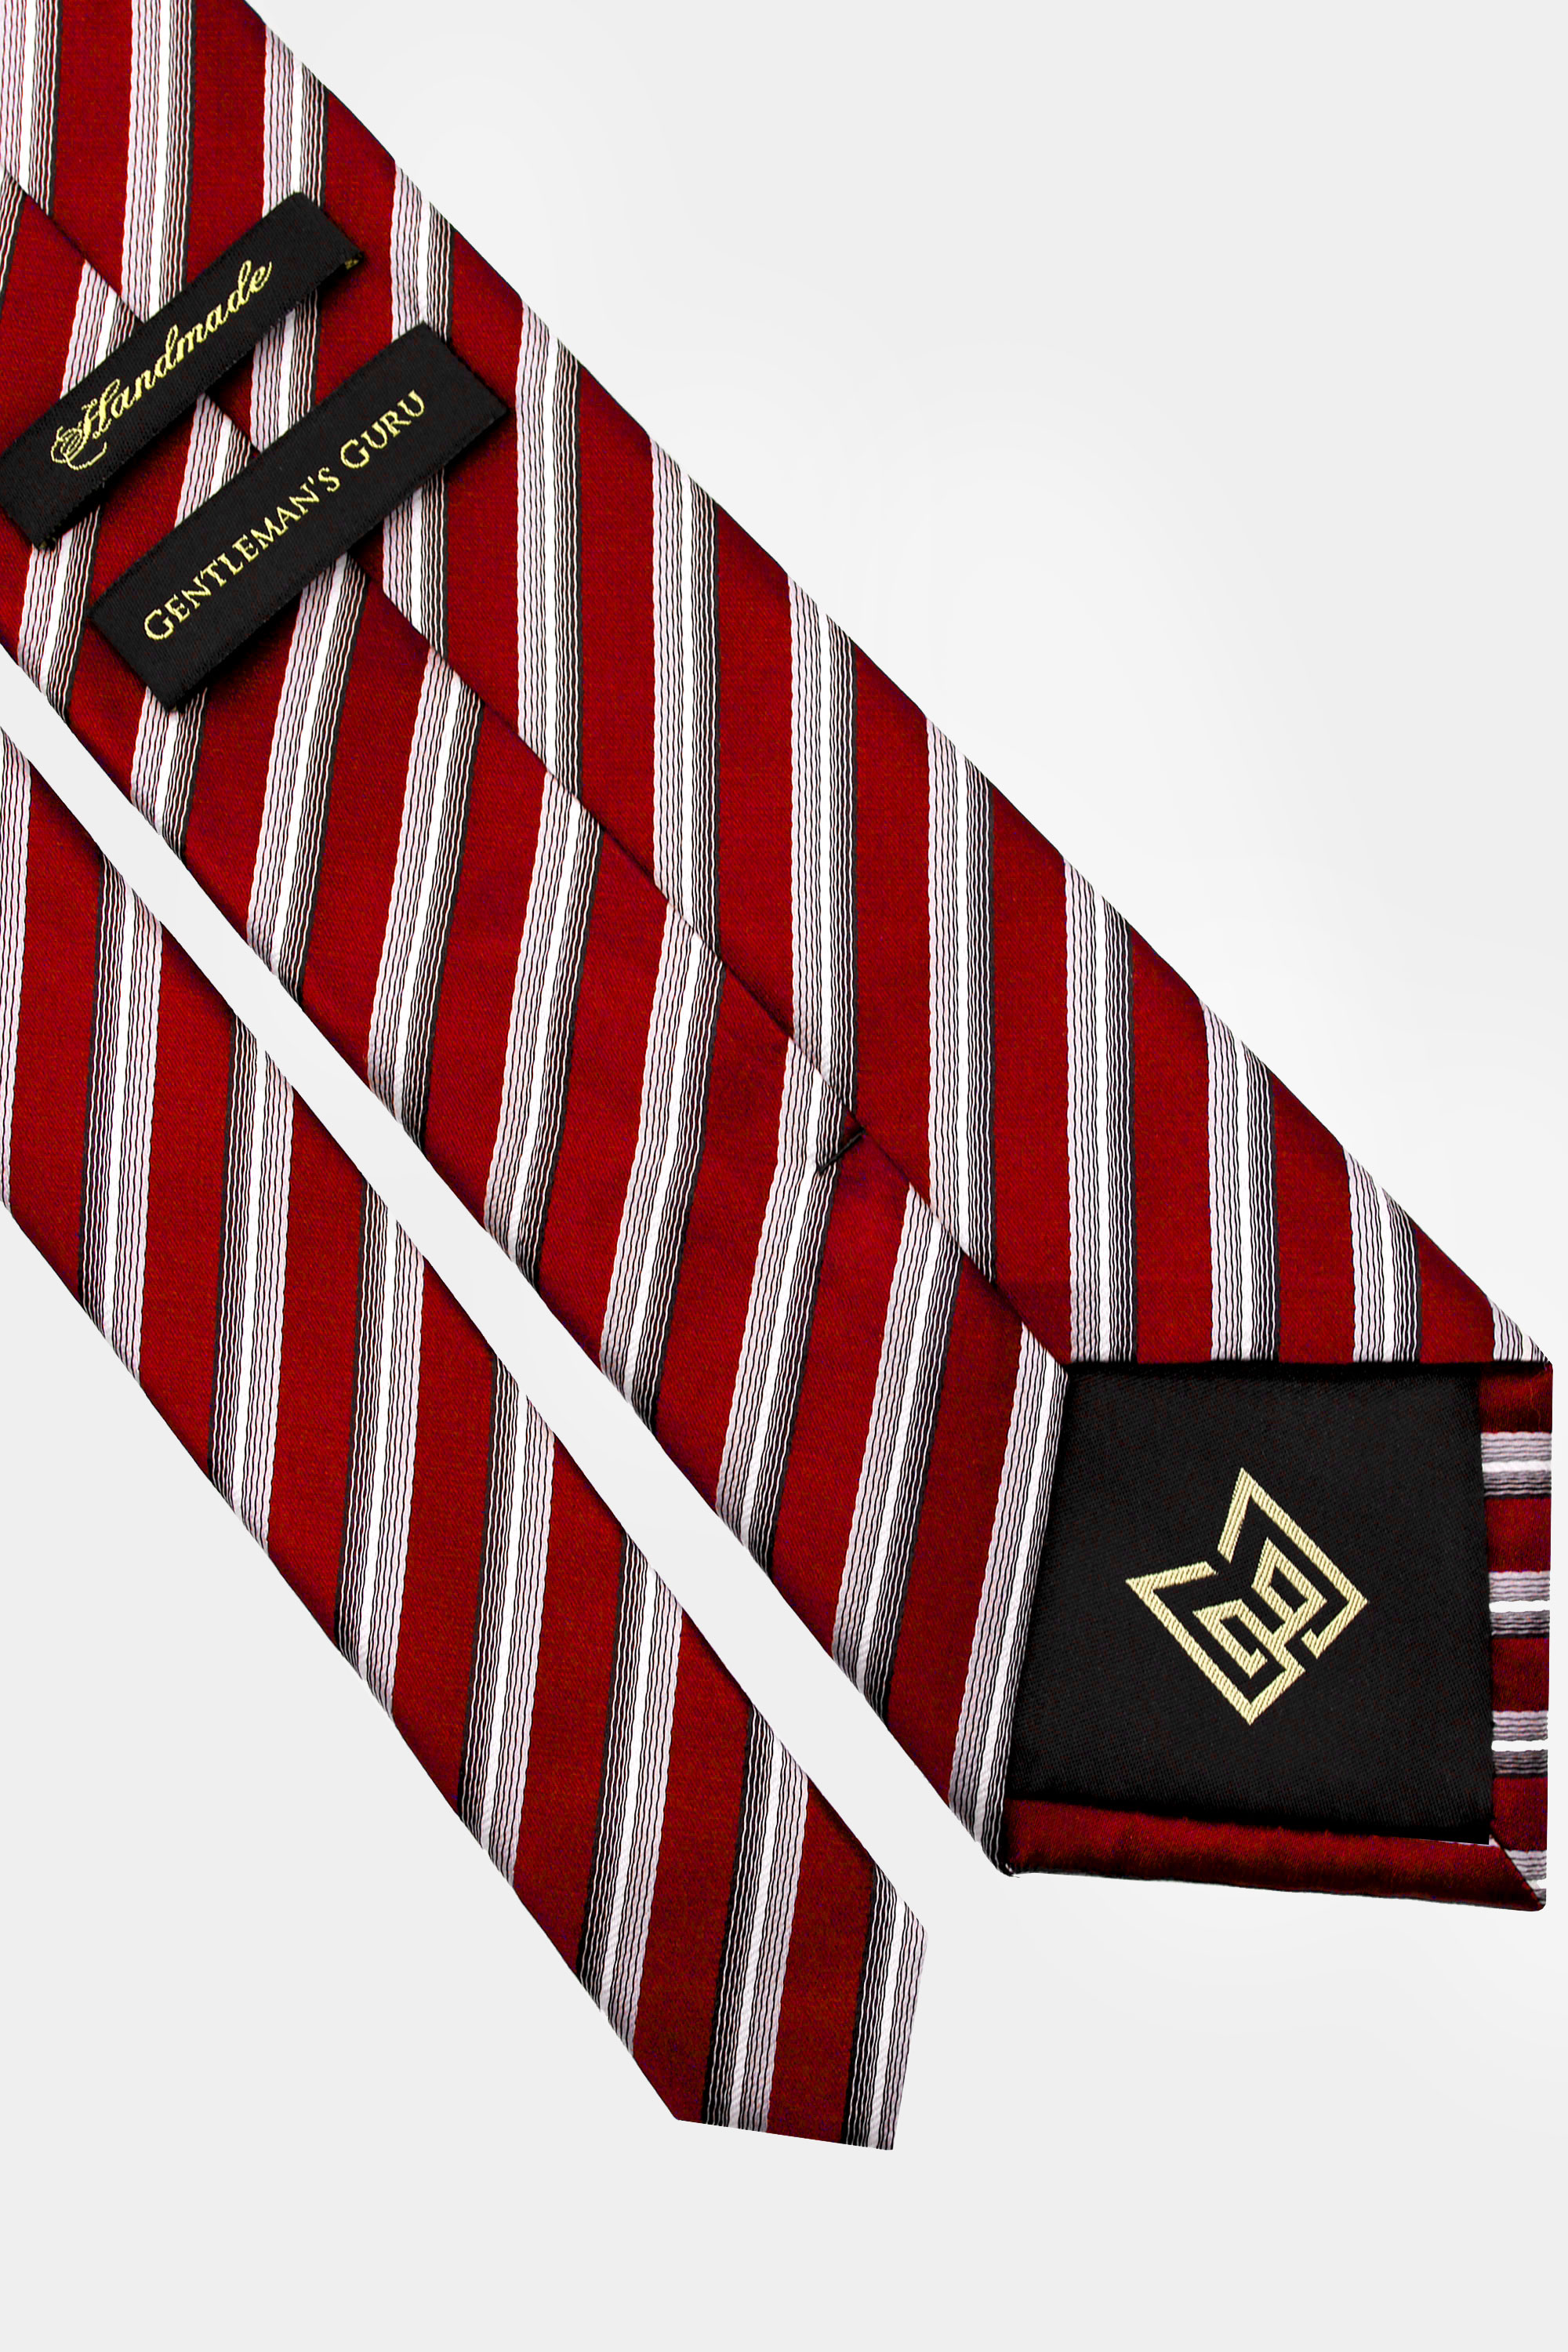 Burgundy-Striped-Tie-from-Gentlemansguru.com